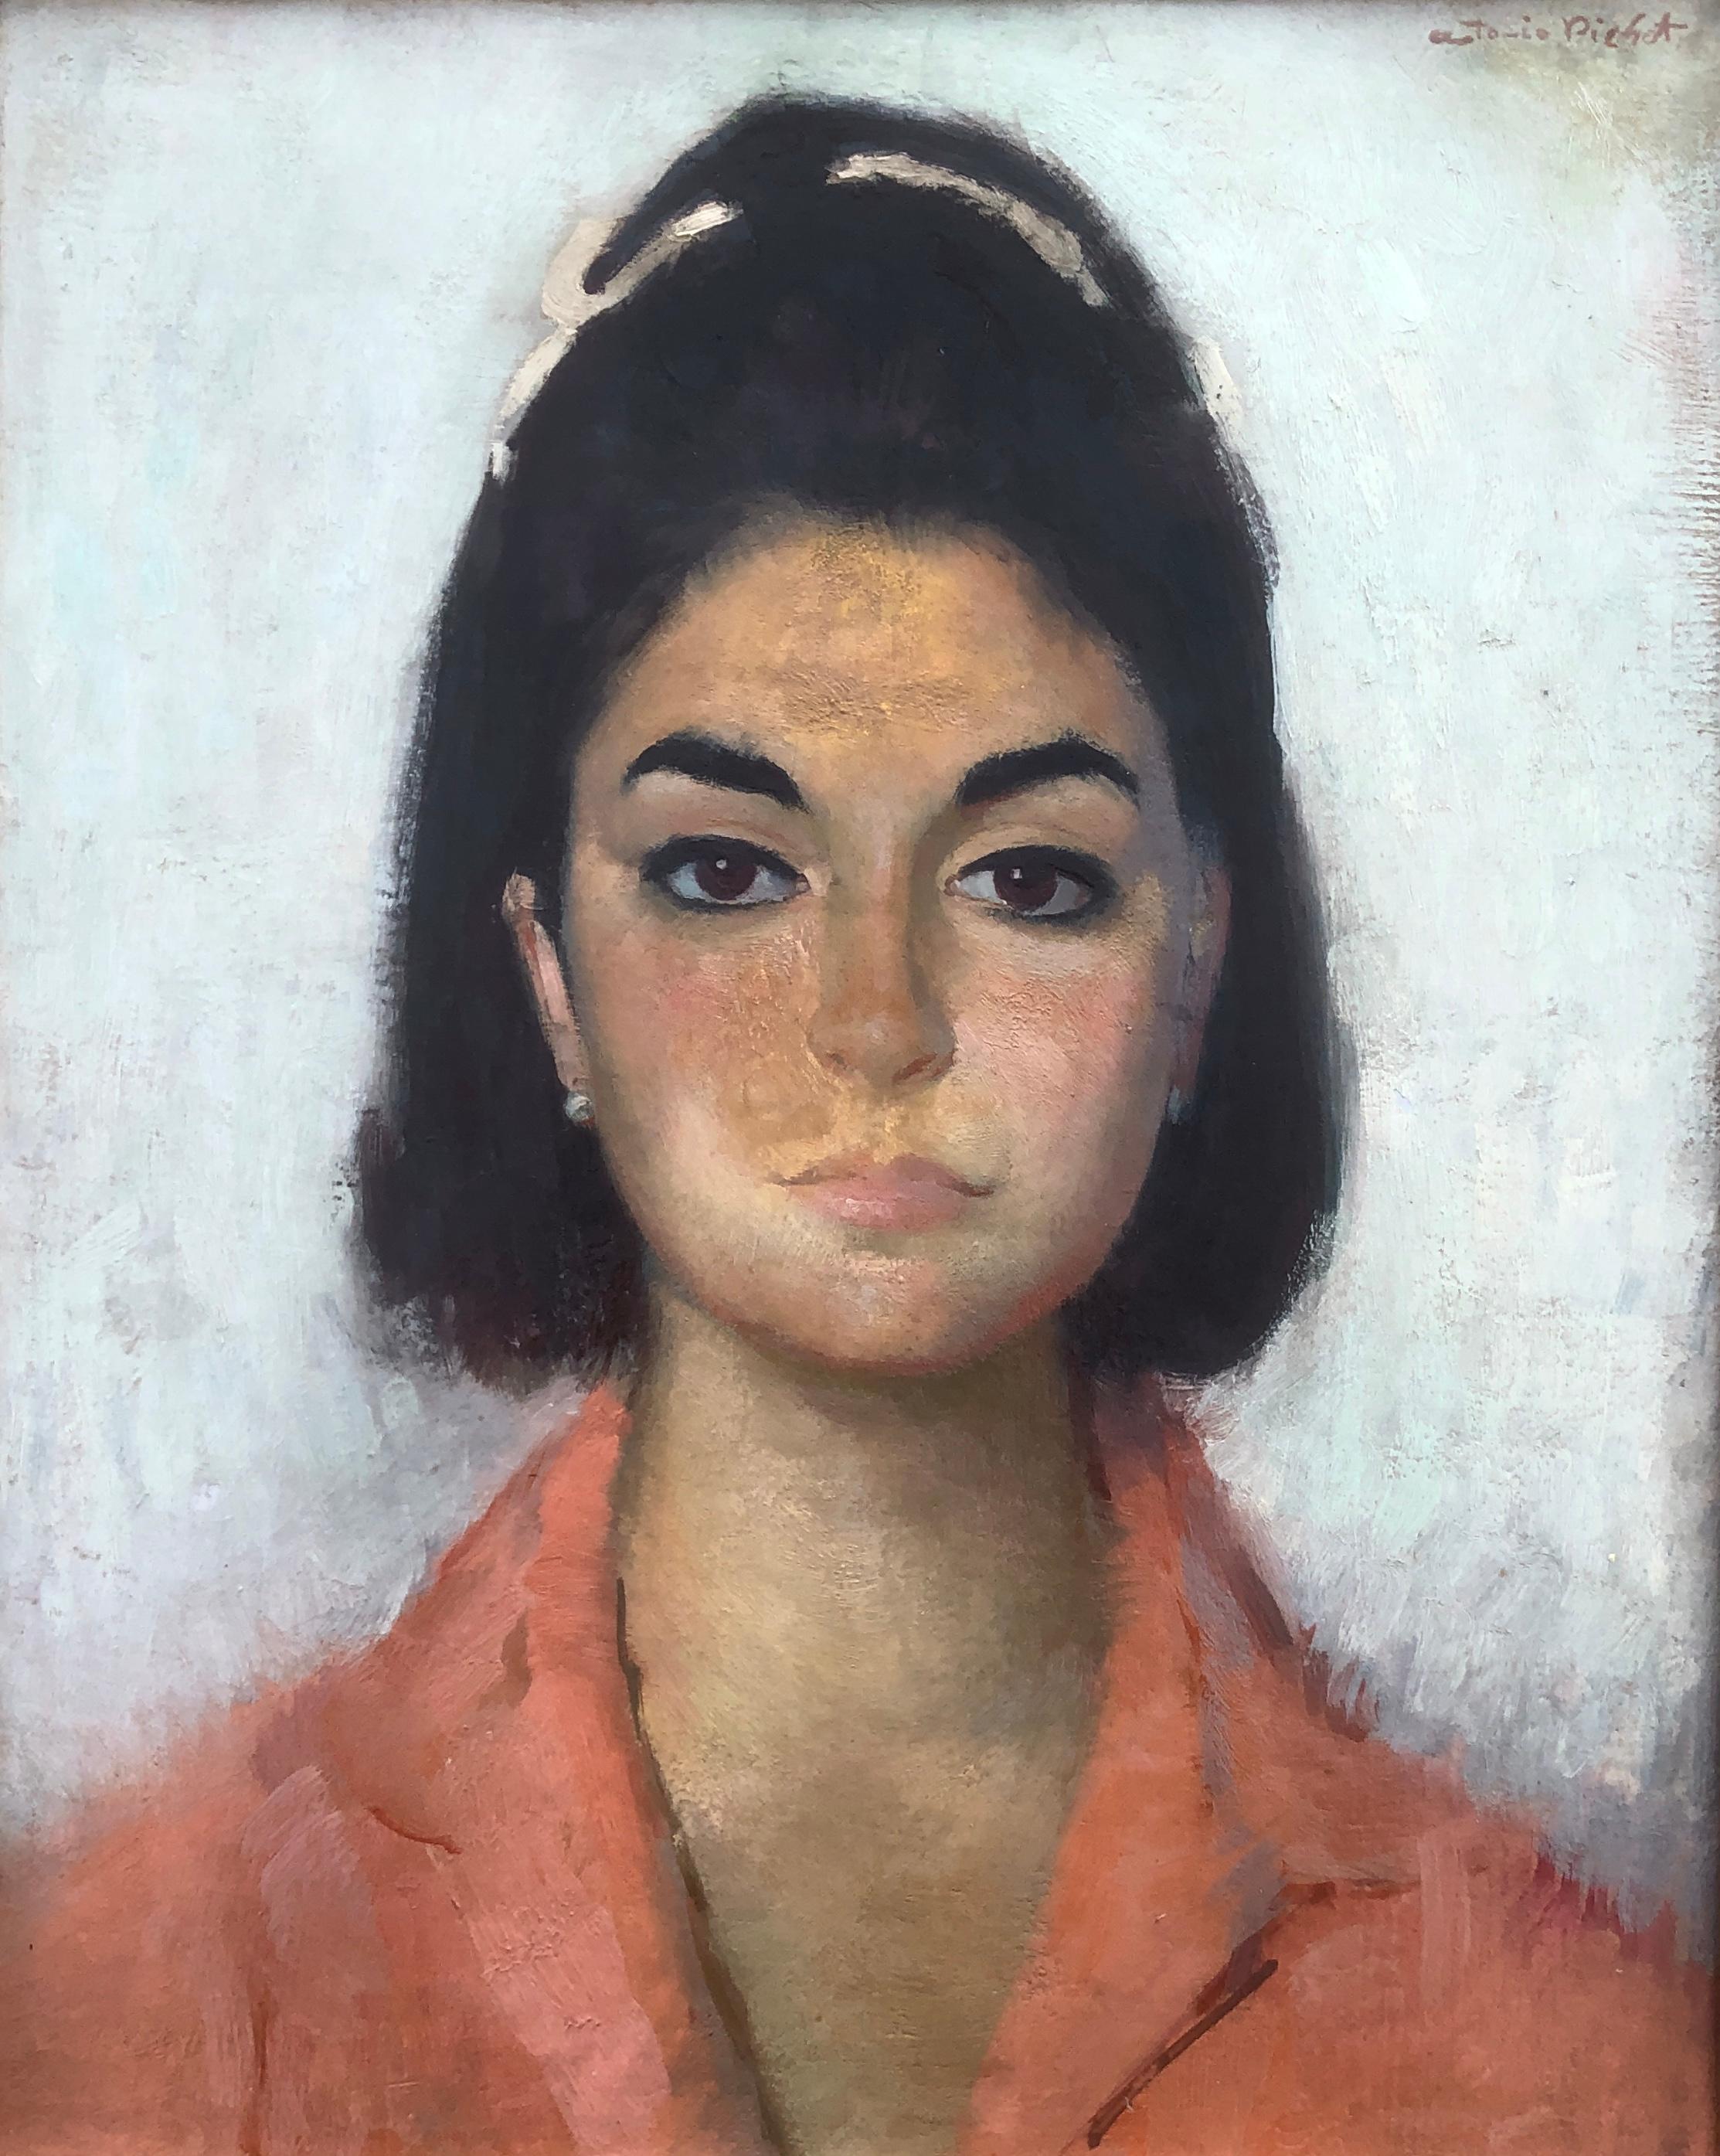 Antoni Pitxot Portrait Painting - Woman portrait oil on canvas painting pitxot